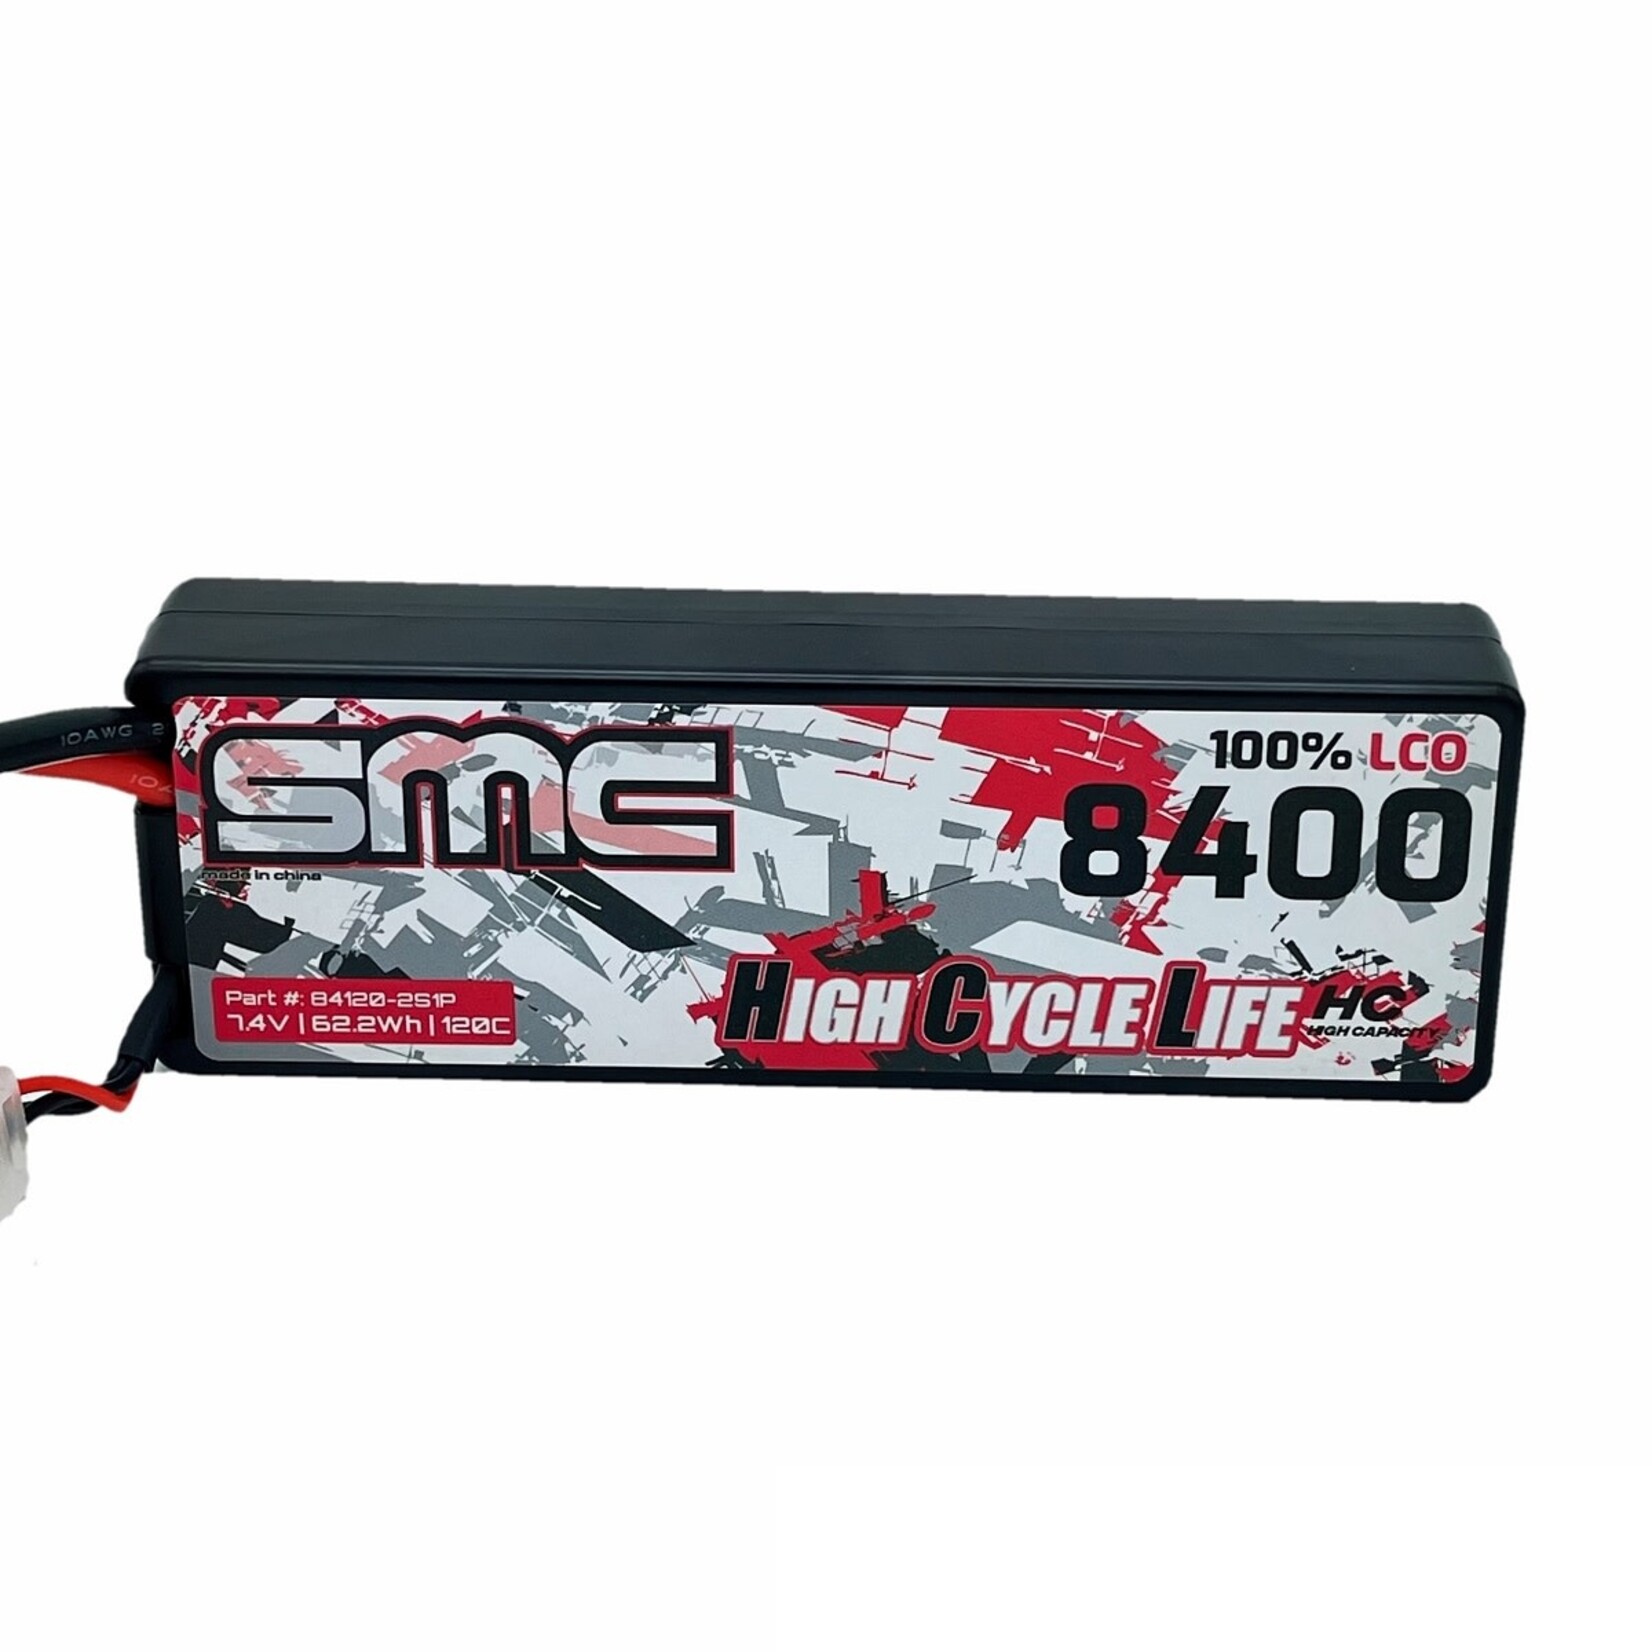 SMC SMC HCL-HC 7.4V-8400mAh 120C Hardcase Battery #84120-2S1P-SC5